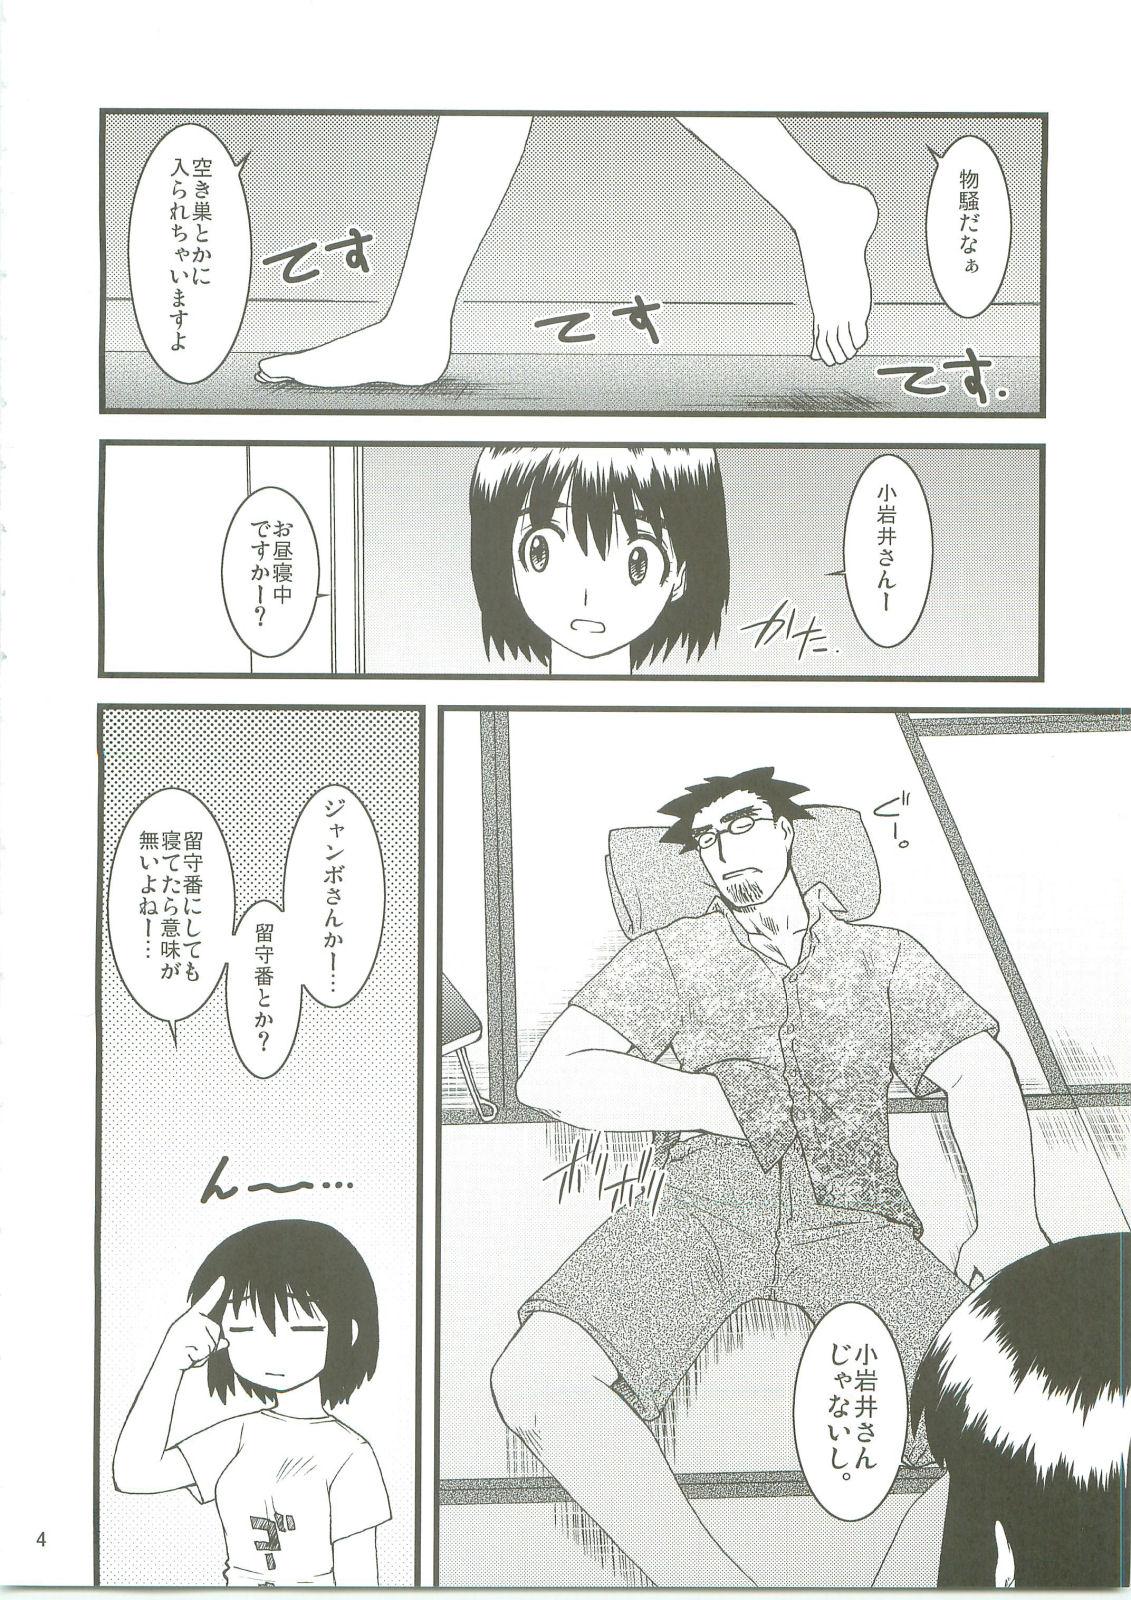 Creampies Fuukato! - Yotsubato Transex - Page 3